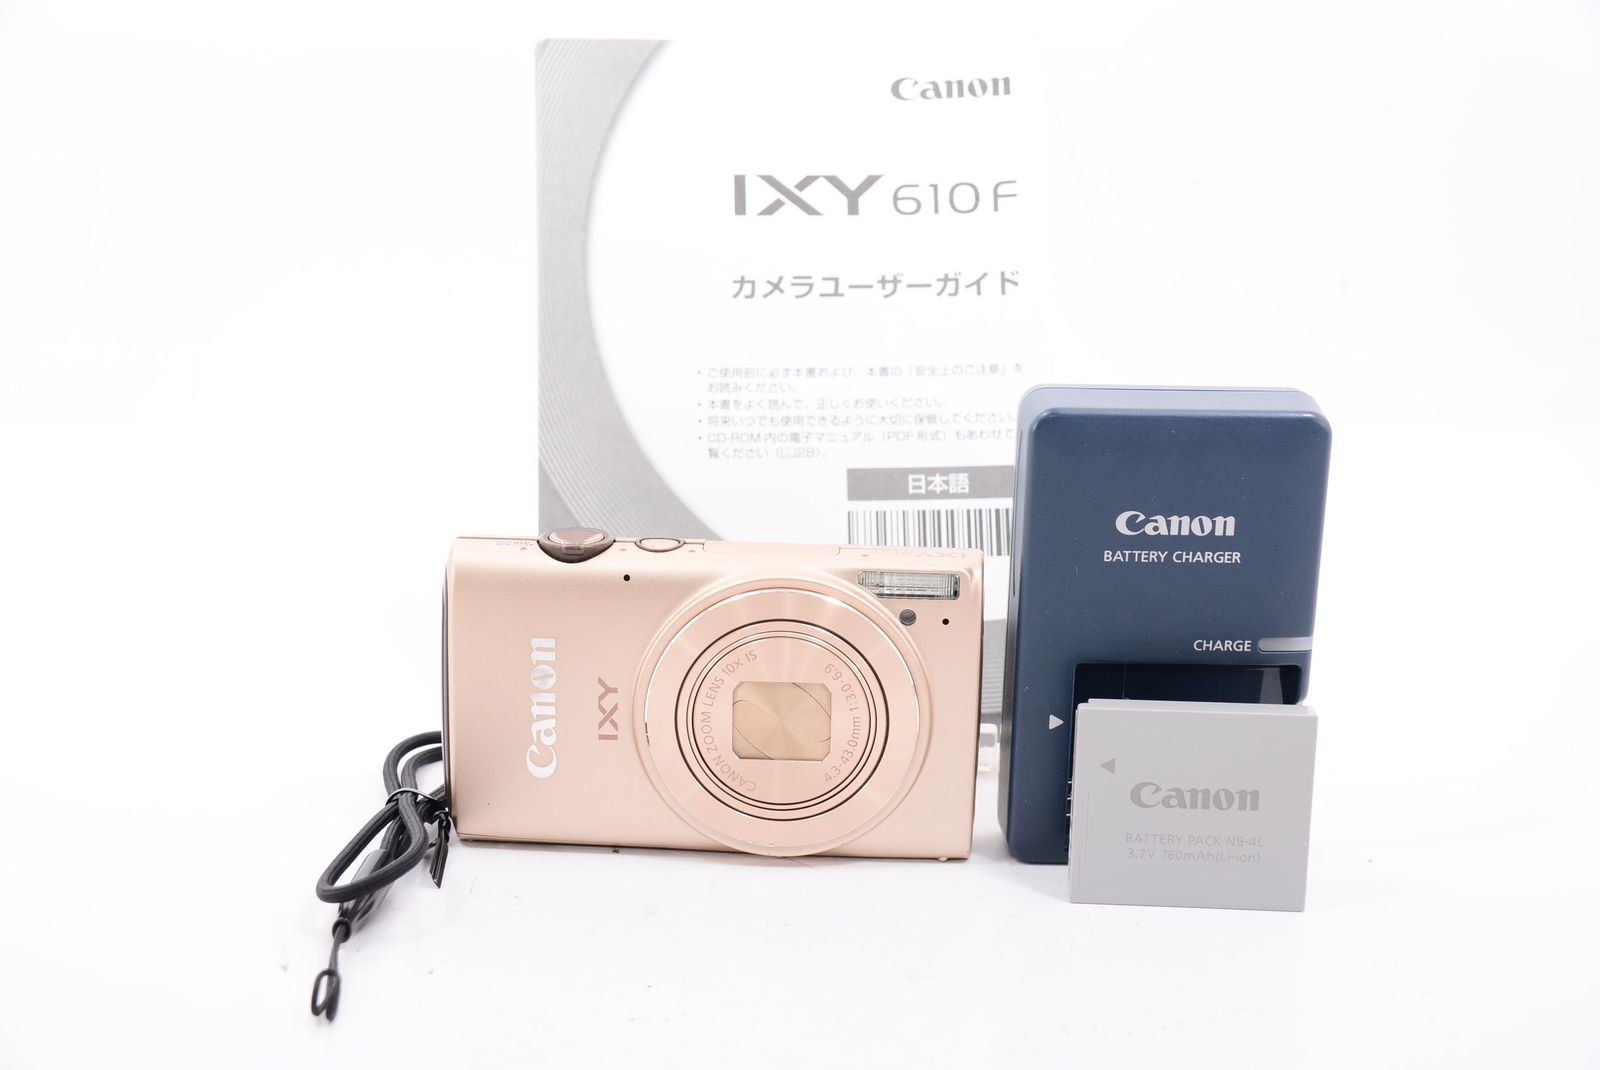 外観特上級】Canon デジタルカメラ IXY 610F - 百獣の買取王カメラ